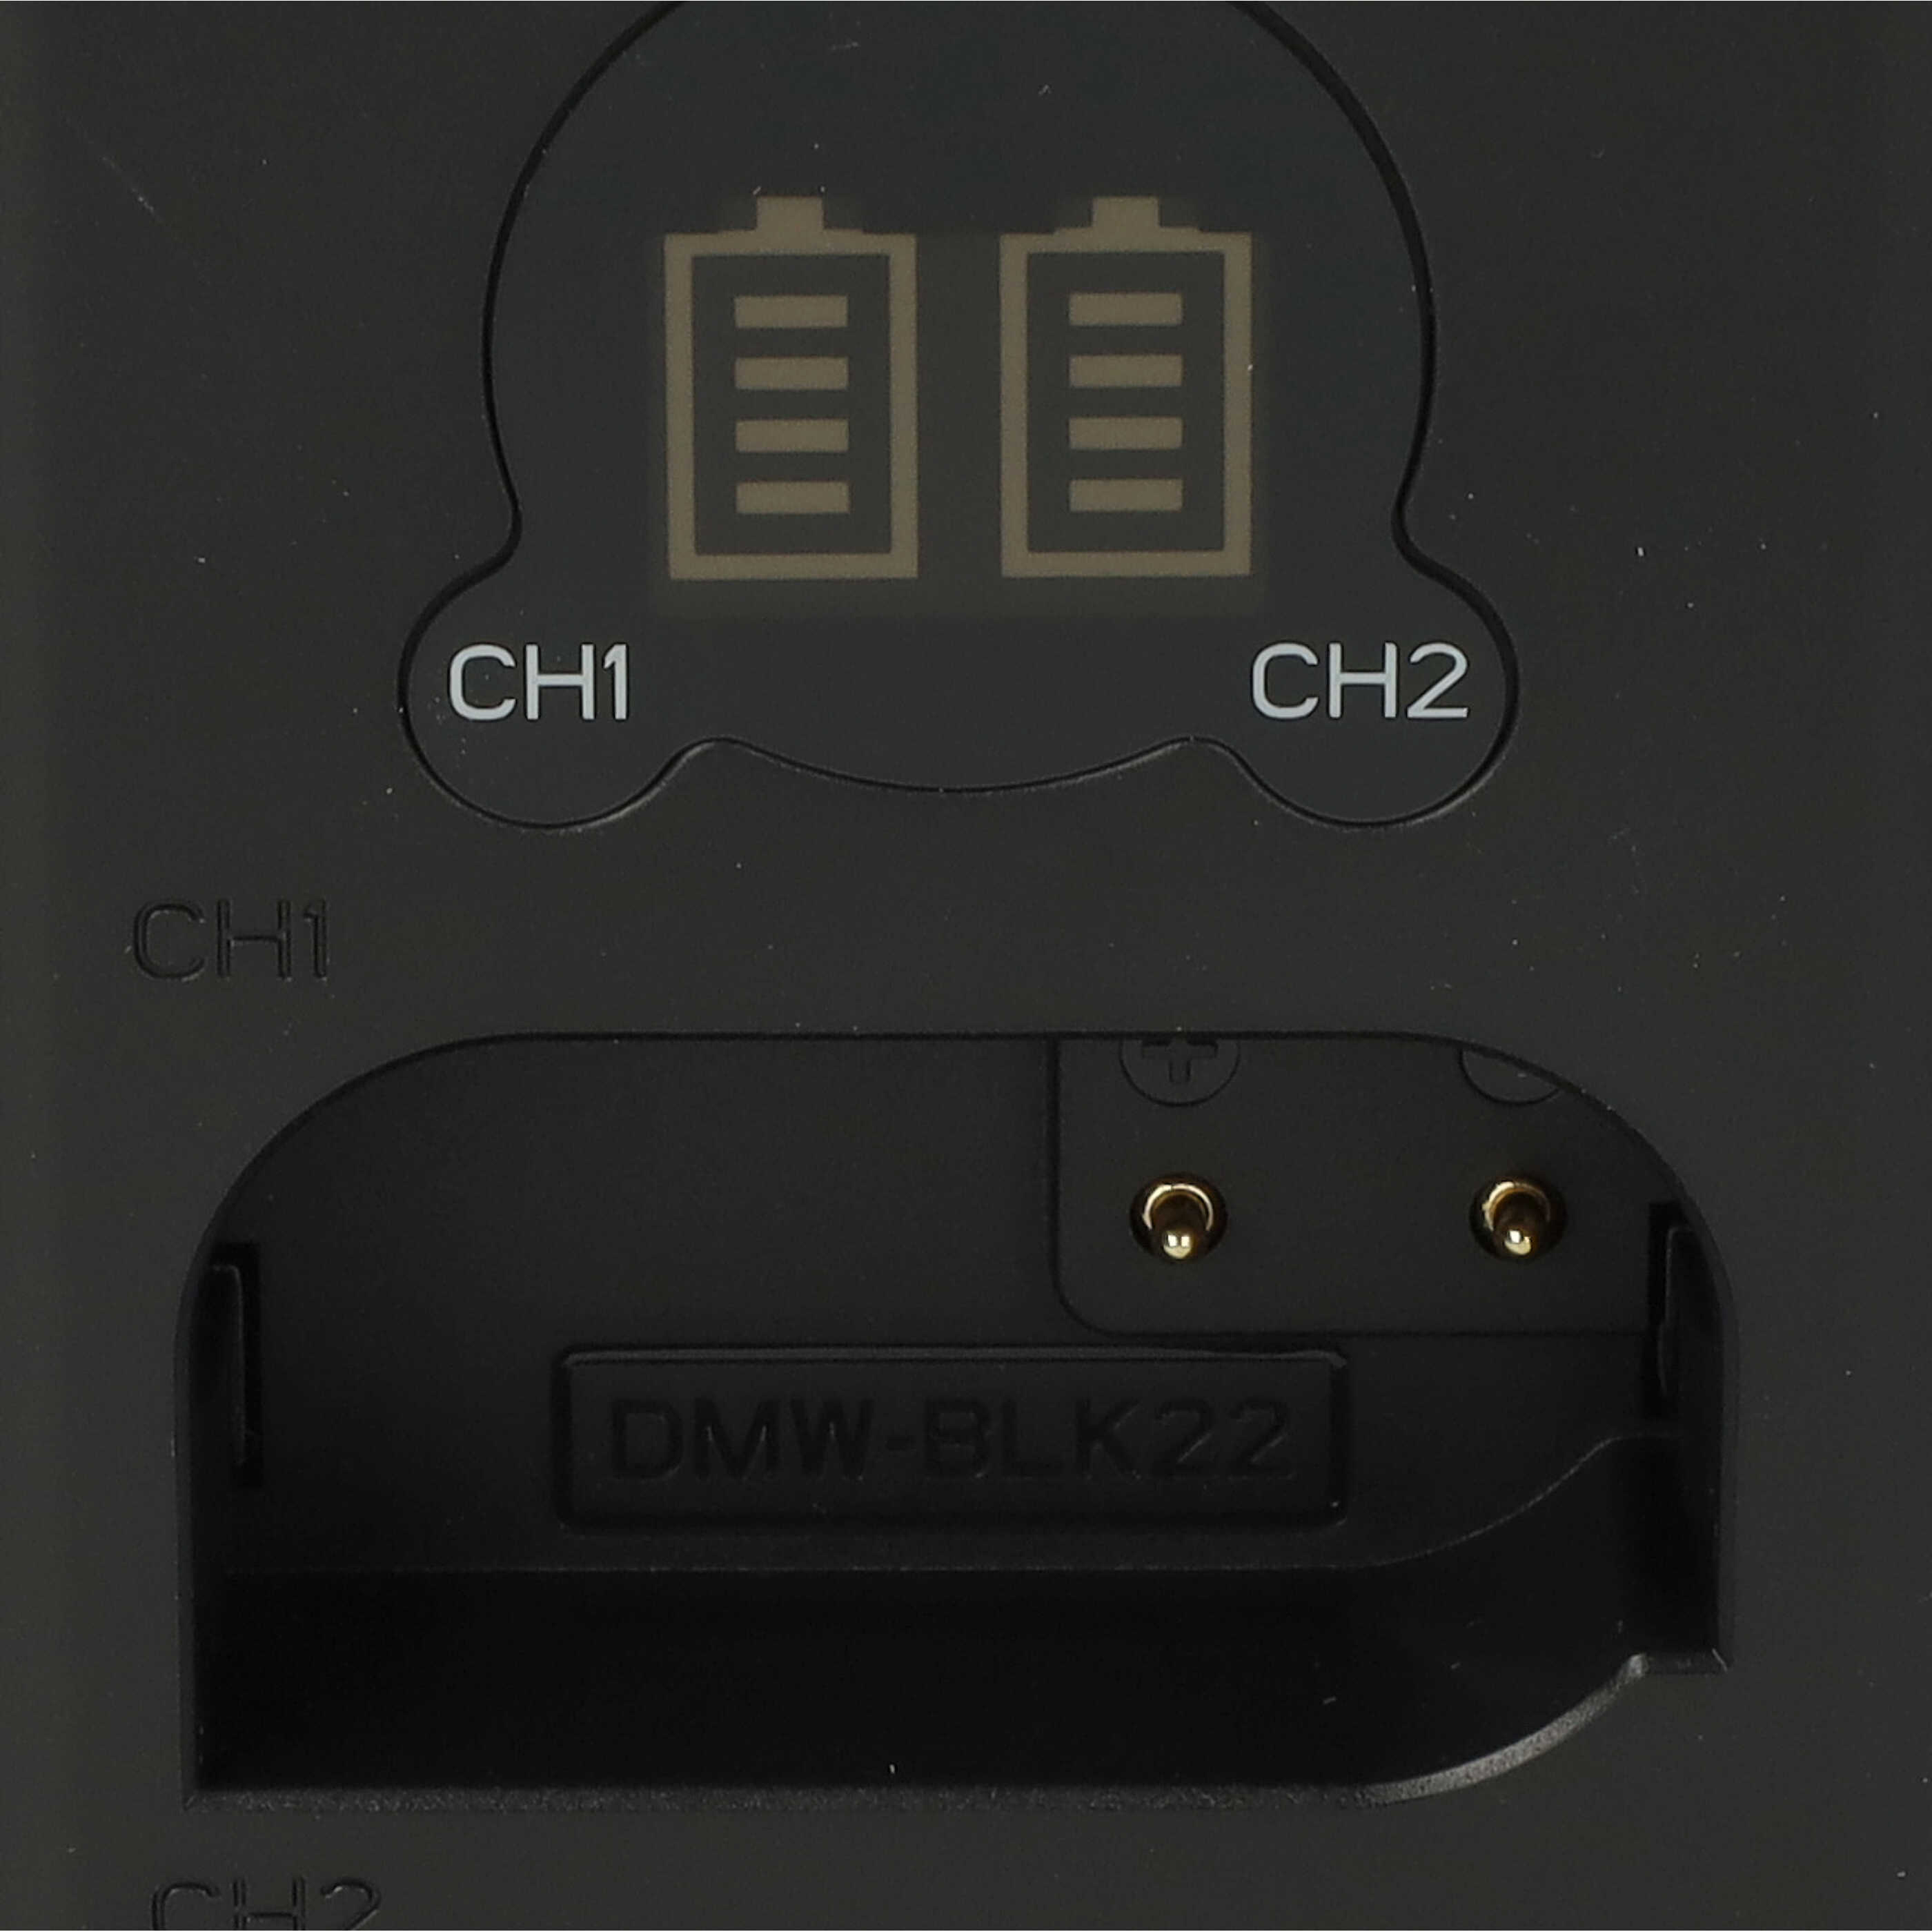 Akku Ladegerät passend für Panasonic DMW-BLK22 Kamera - 8,4 V